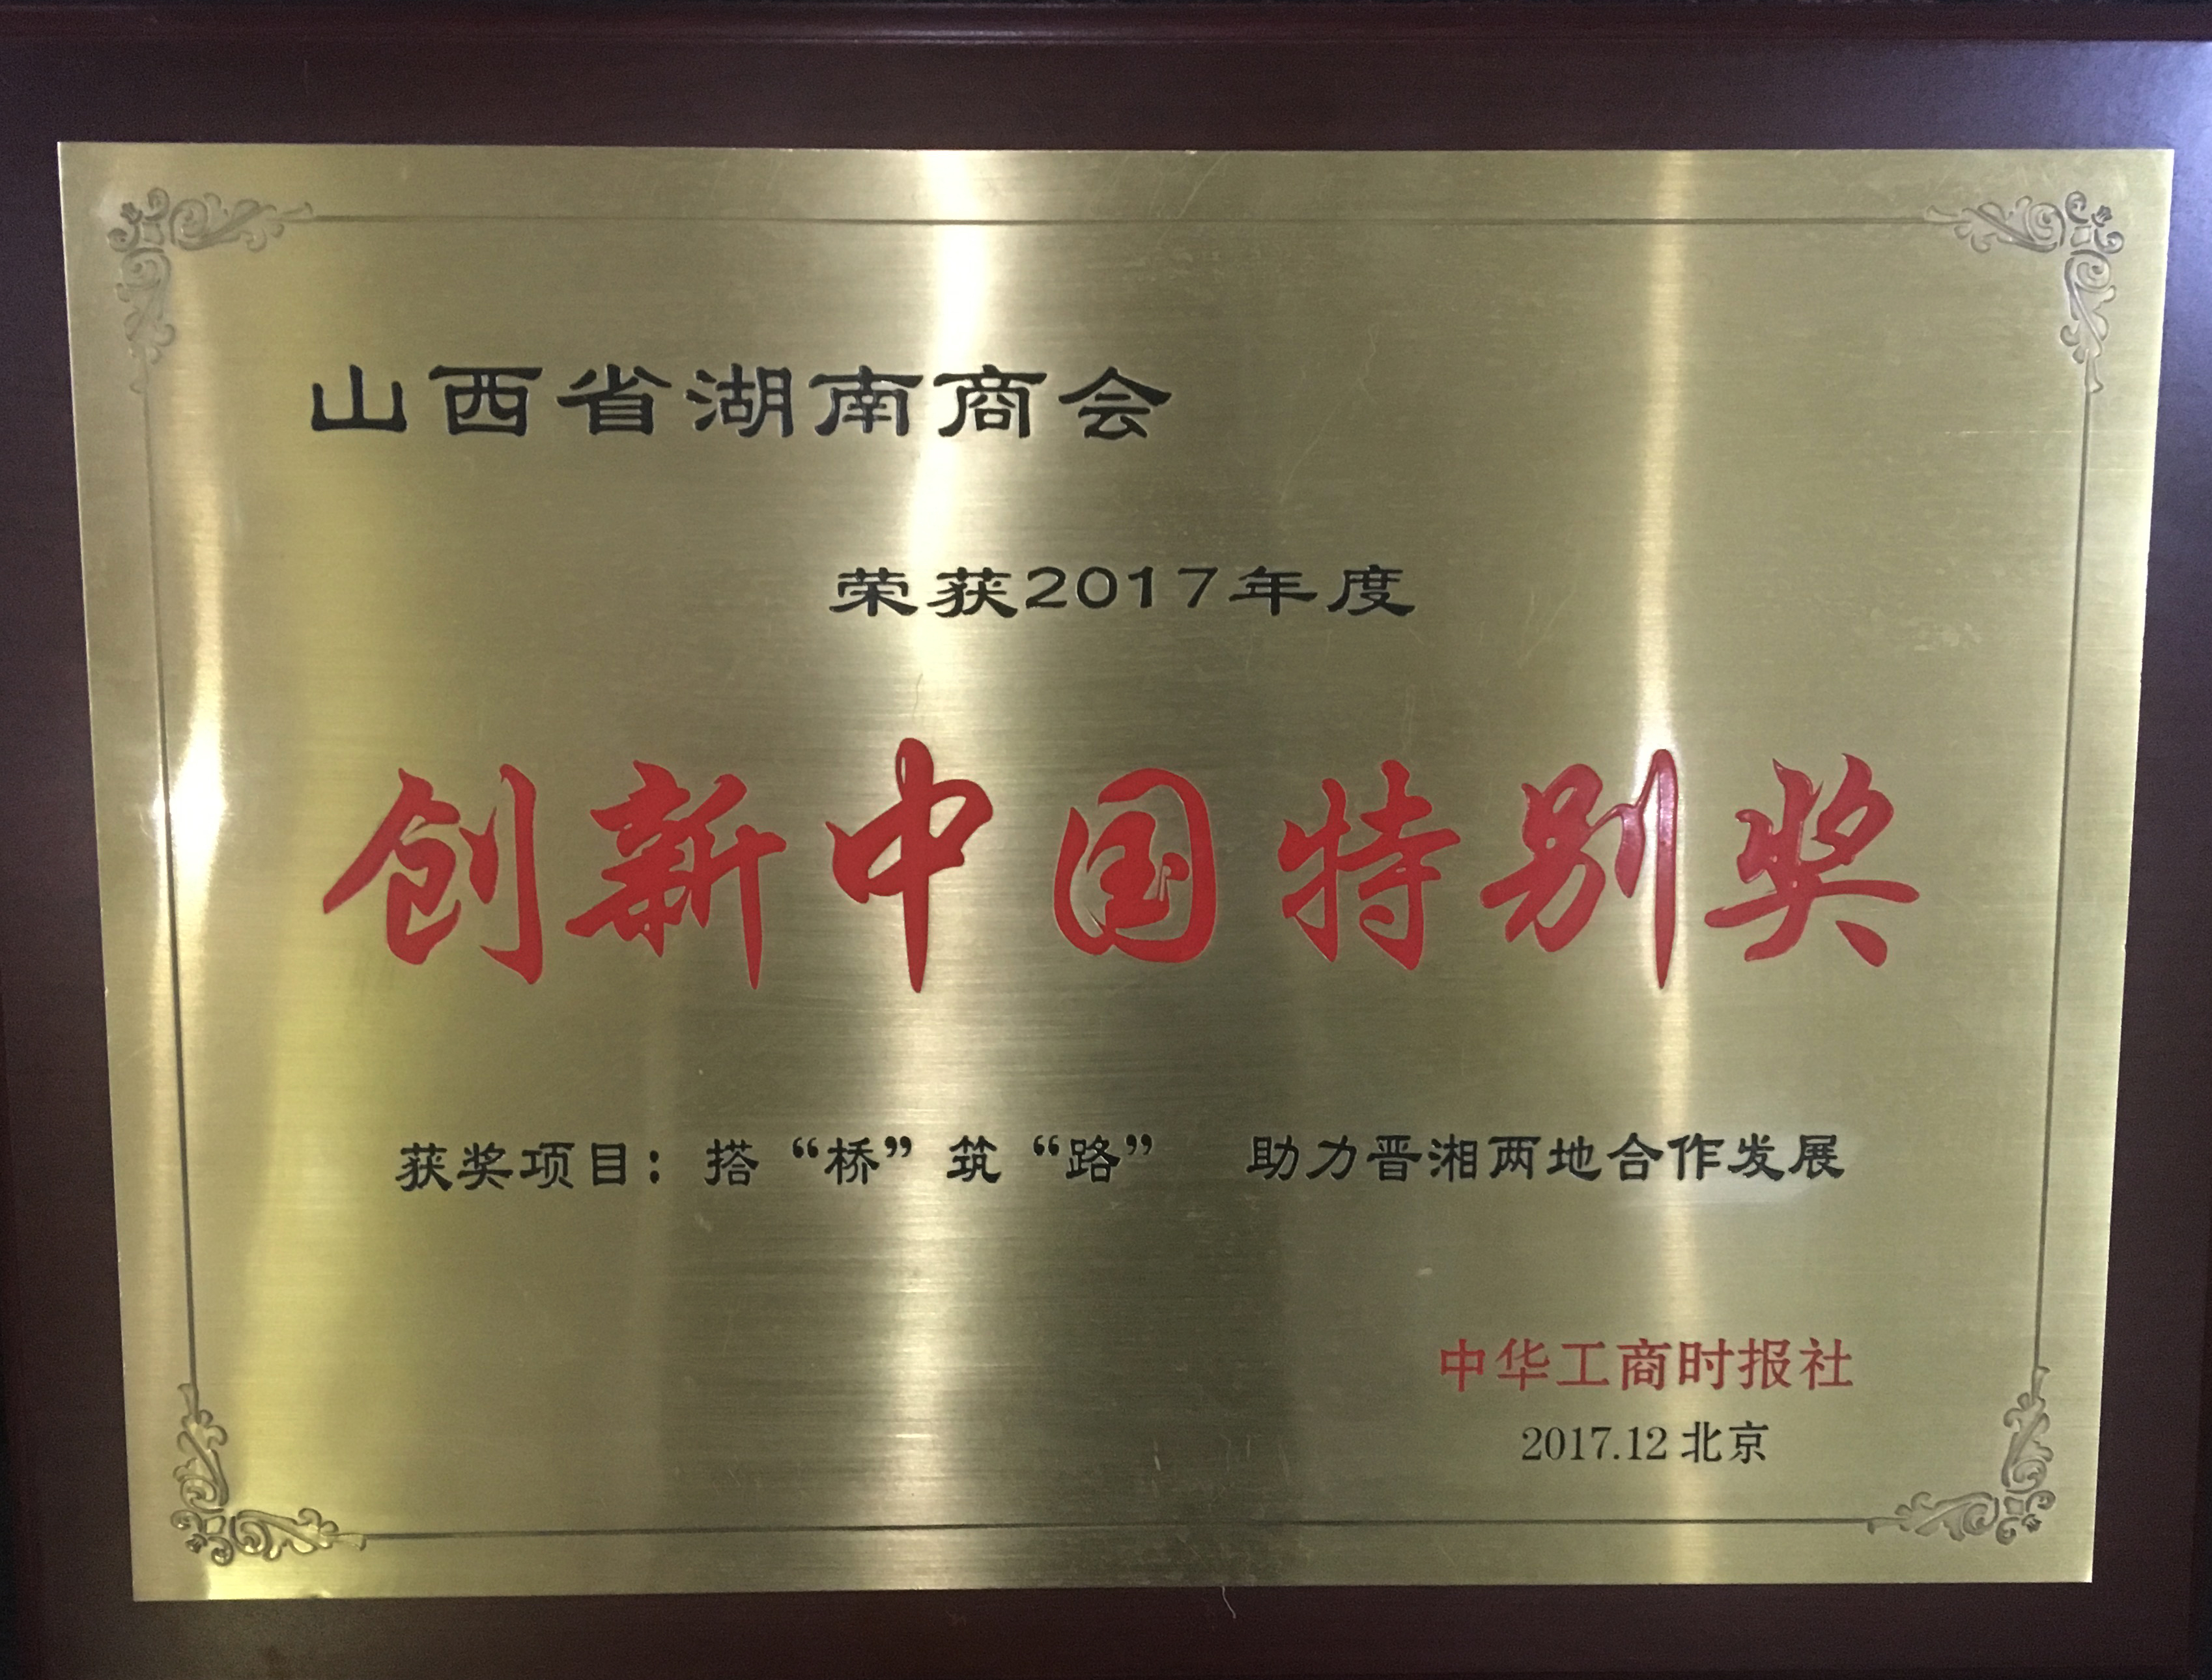 创新中国特别奖